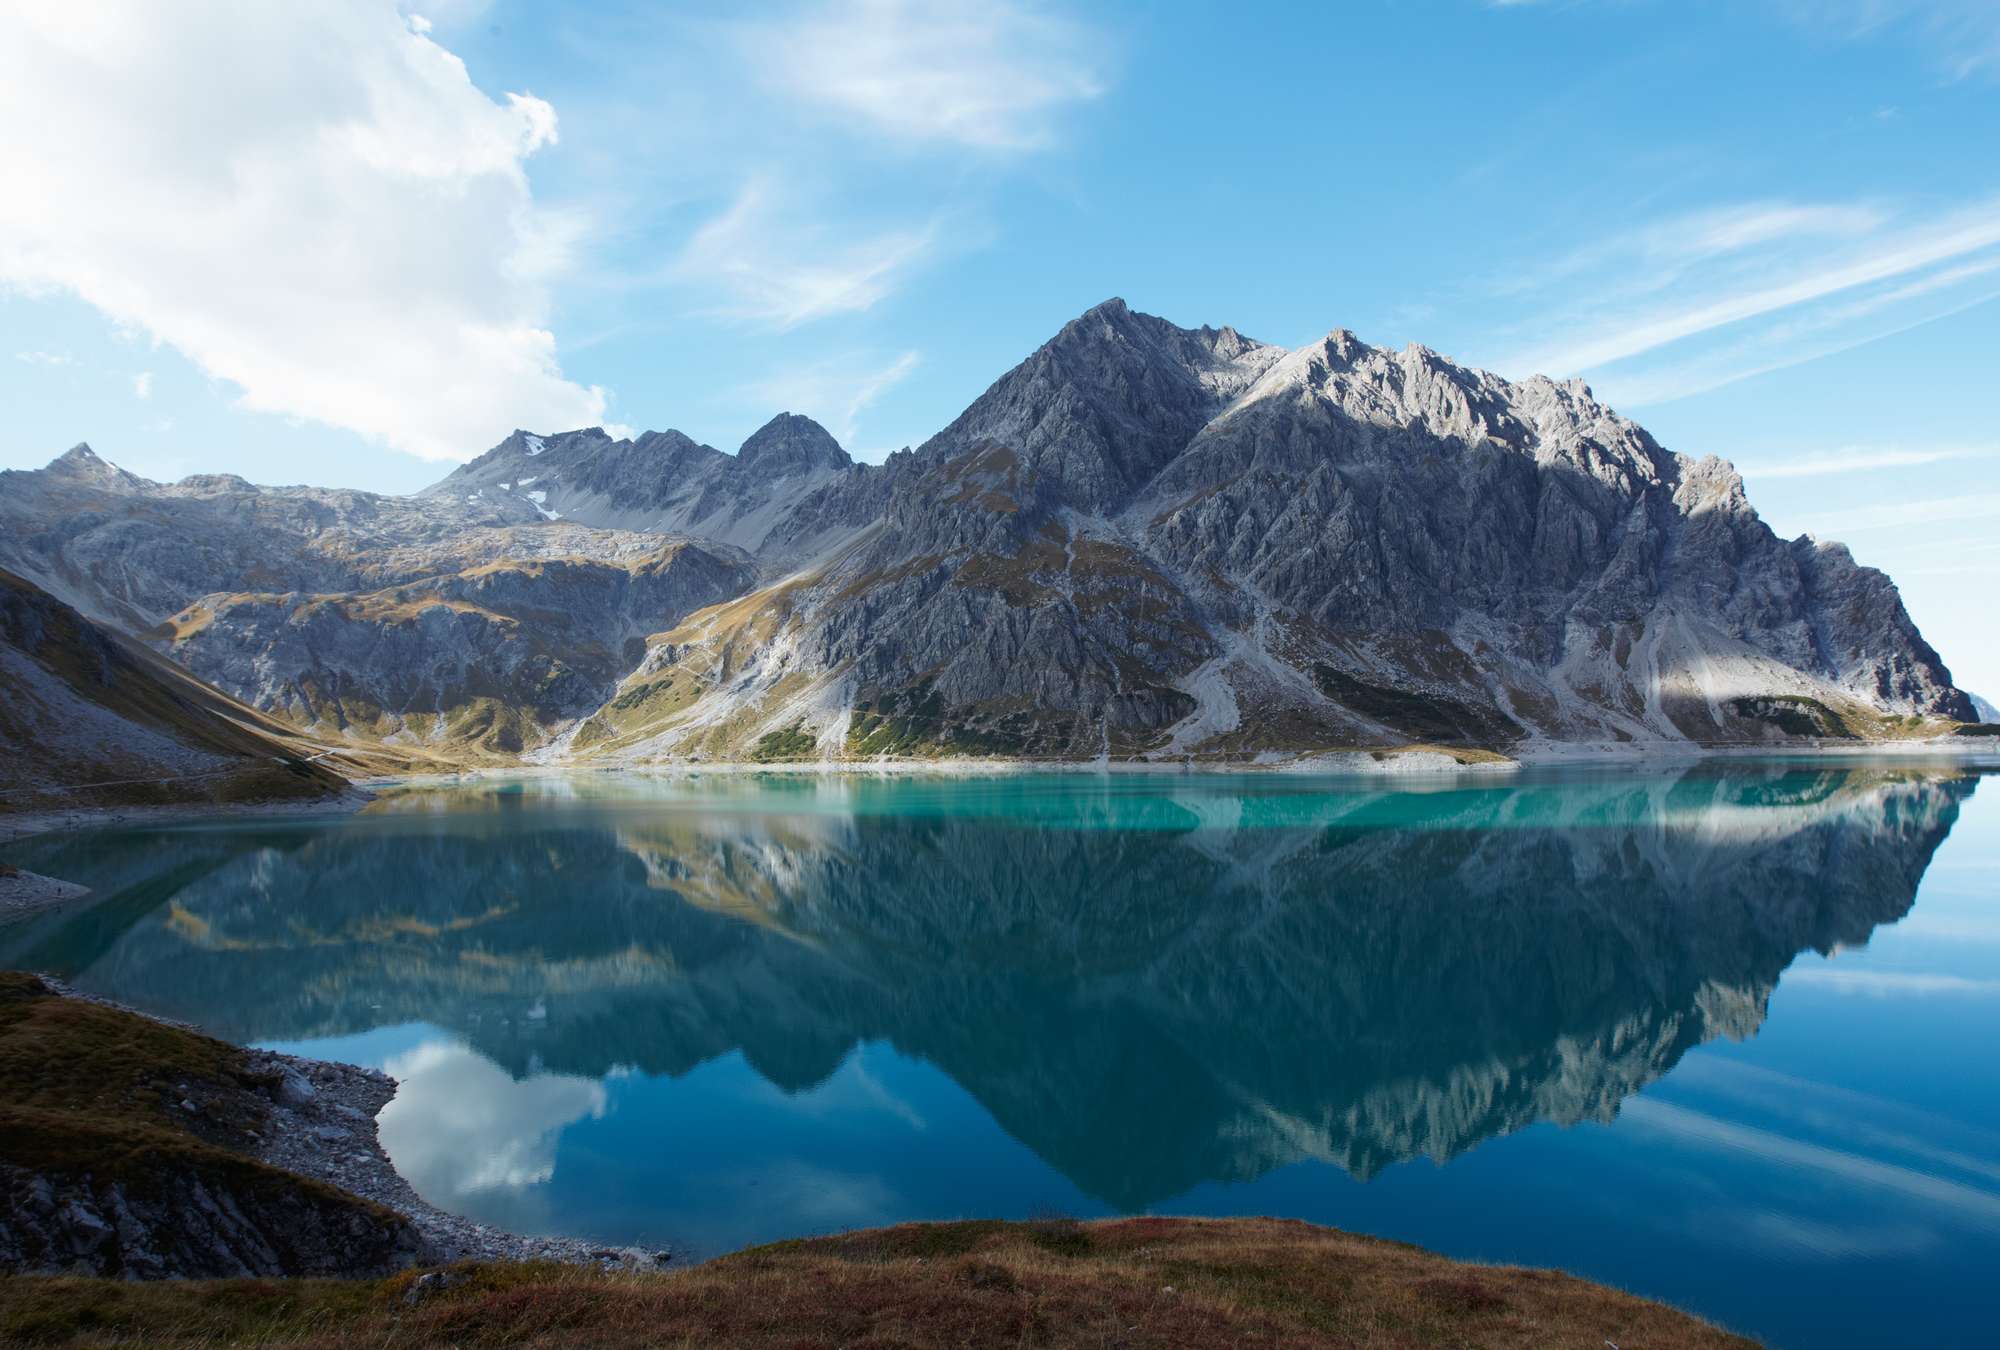             Lago di montagna chiaro - carta da parati natura panorama montagna lago idillio
        